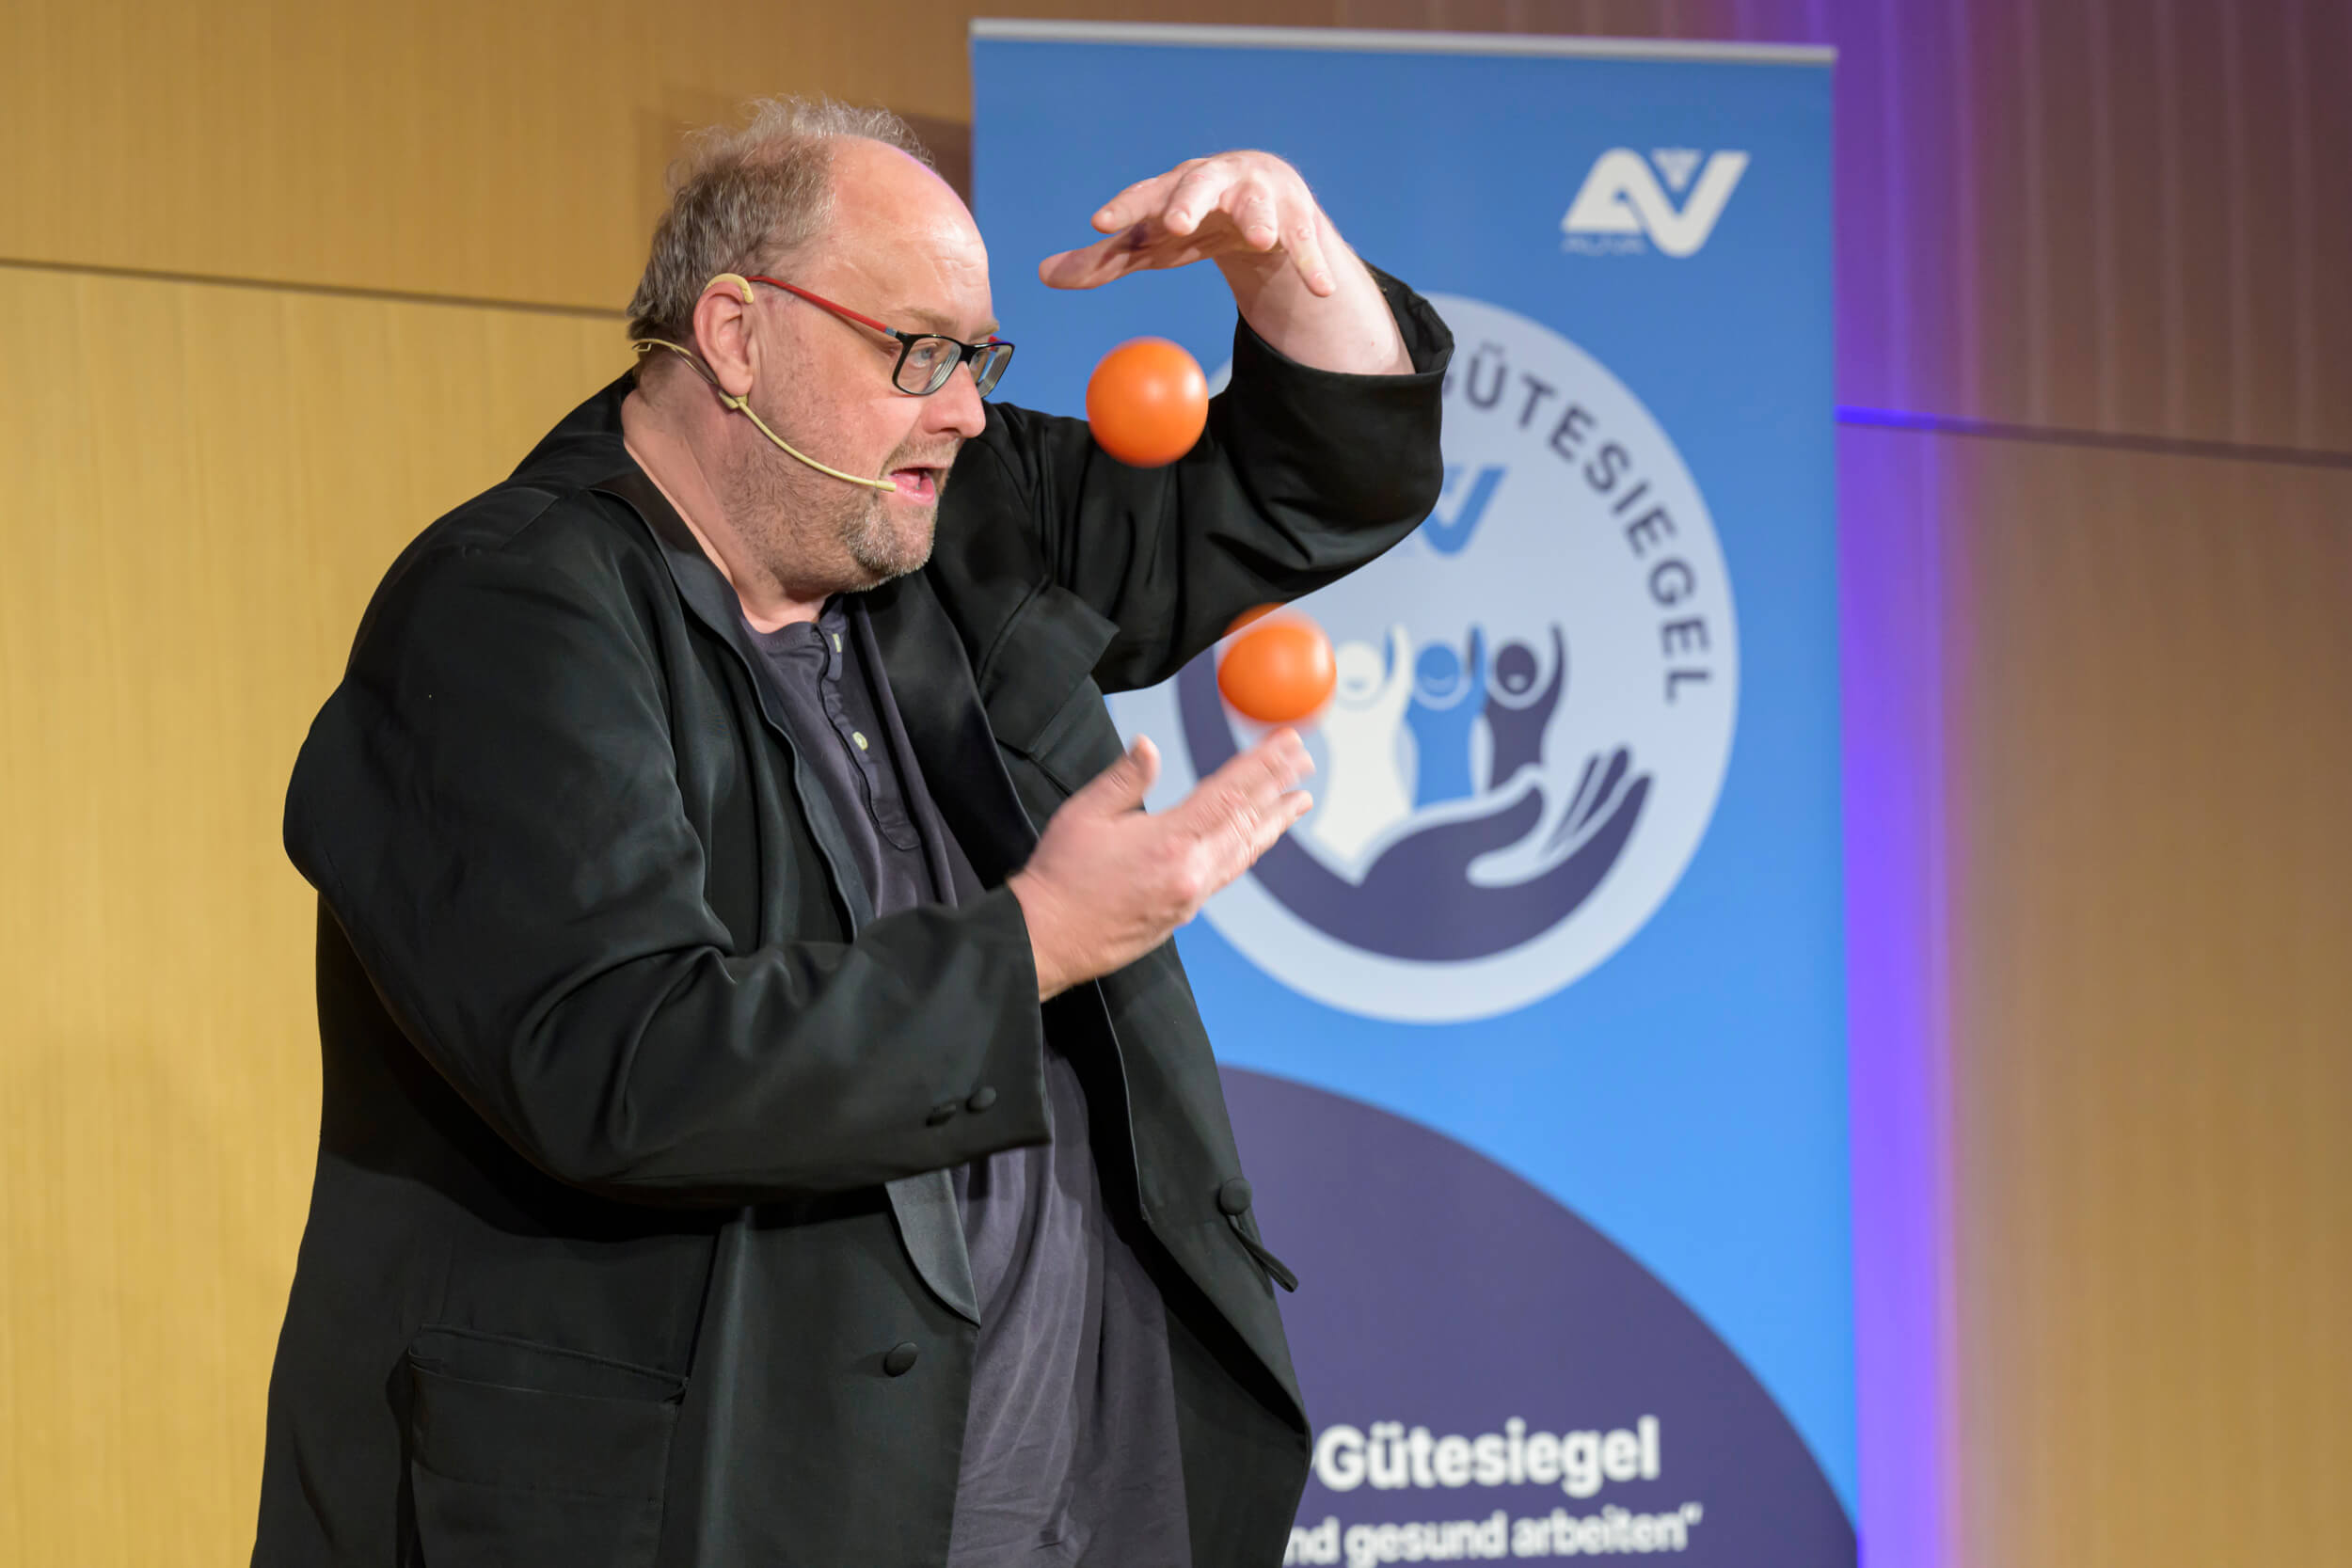 AUVA-Gütesiegel-Verleihung 2023: Kabarettist Günther Lainer beim Jonglieren